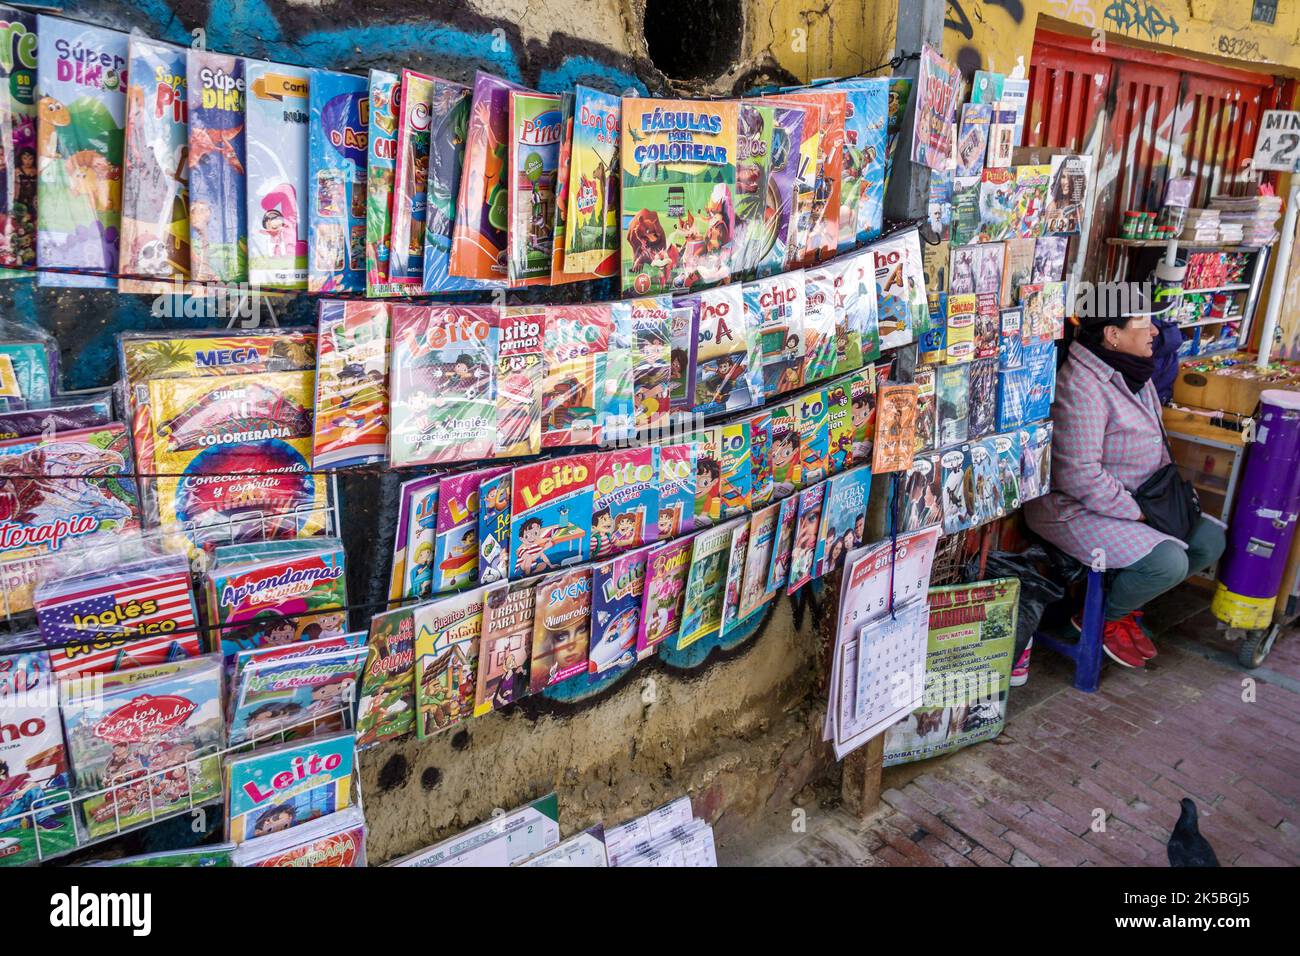 Bogota Kolumbien,Veracruz Calle 16 Gehweg Display Verkäufer Bücher Bildtexte illustrierte Kinderbücher spanische Sprache,in der Nähe von Santander Park Parq Stockfoto